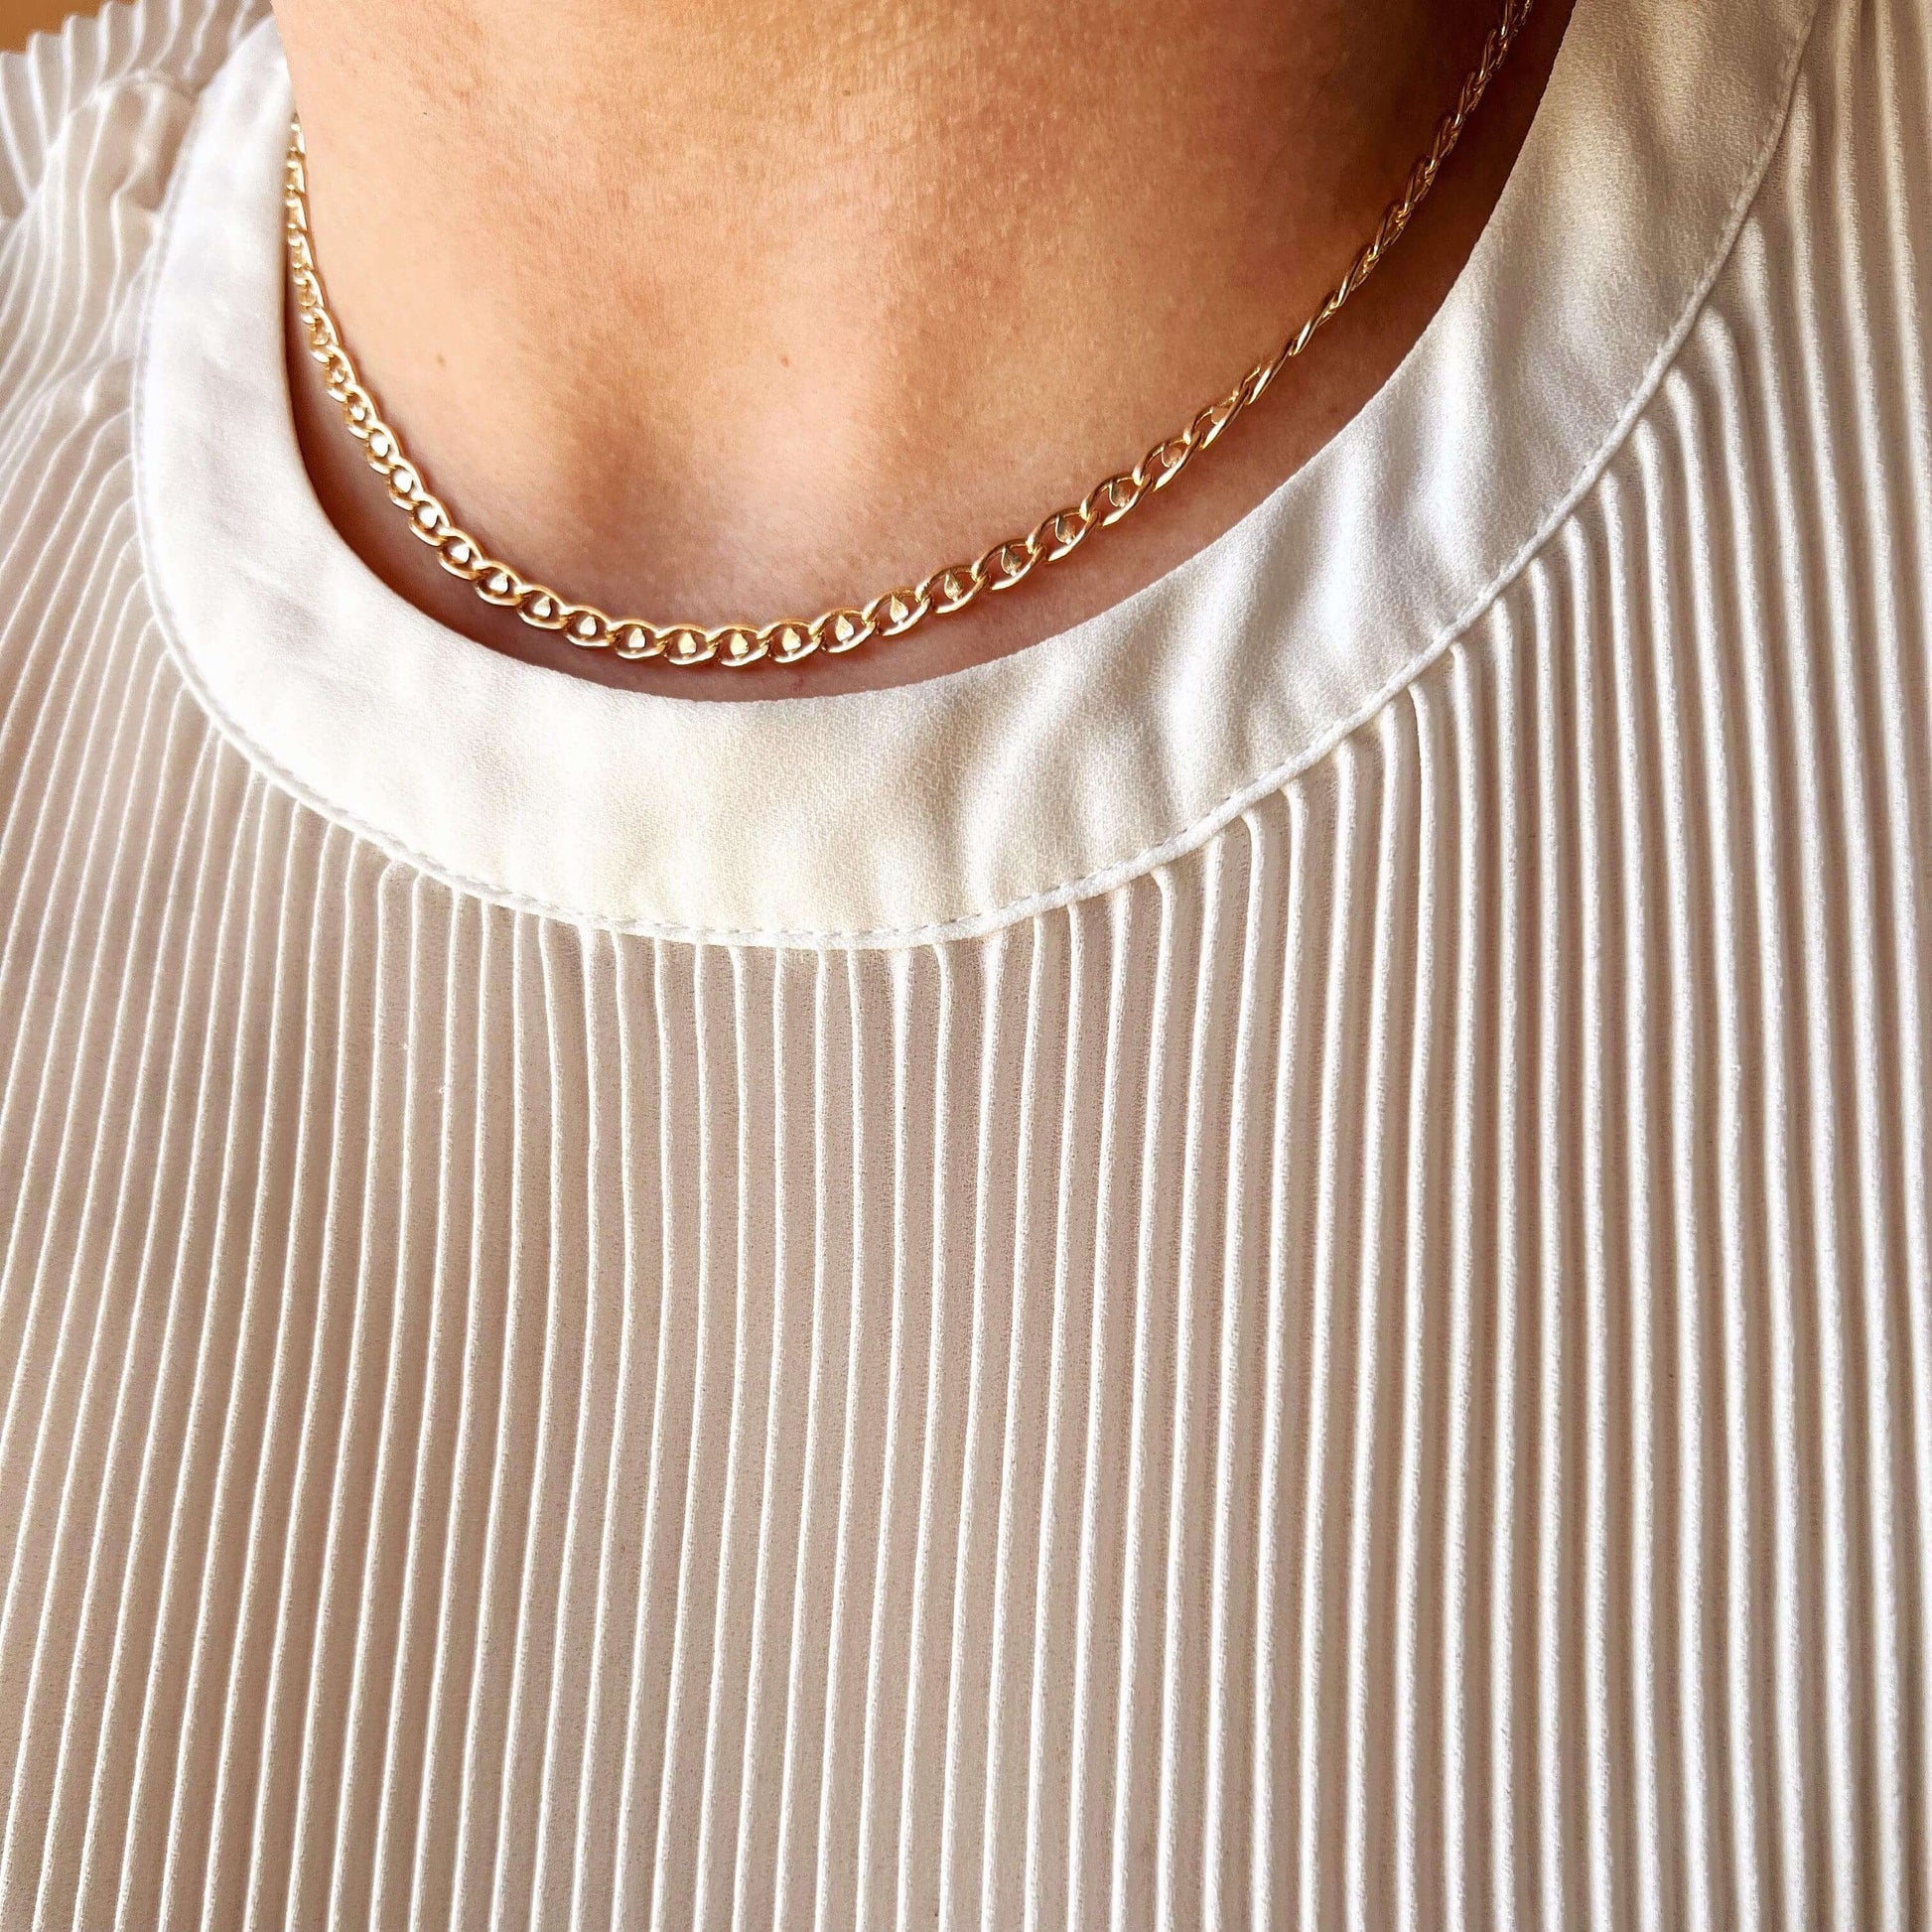 GoldFi Fancy Mariner 18k Gold Filled Necklace